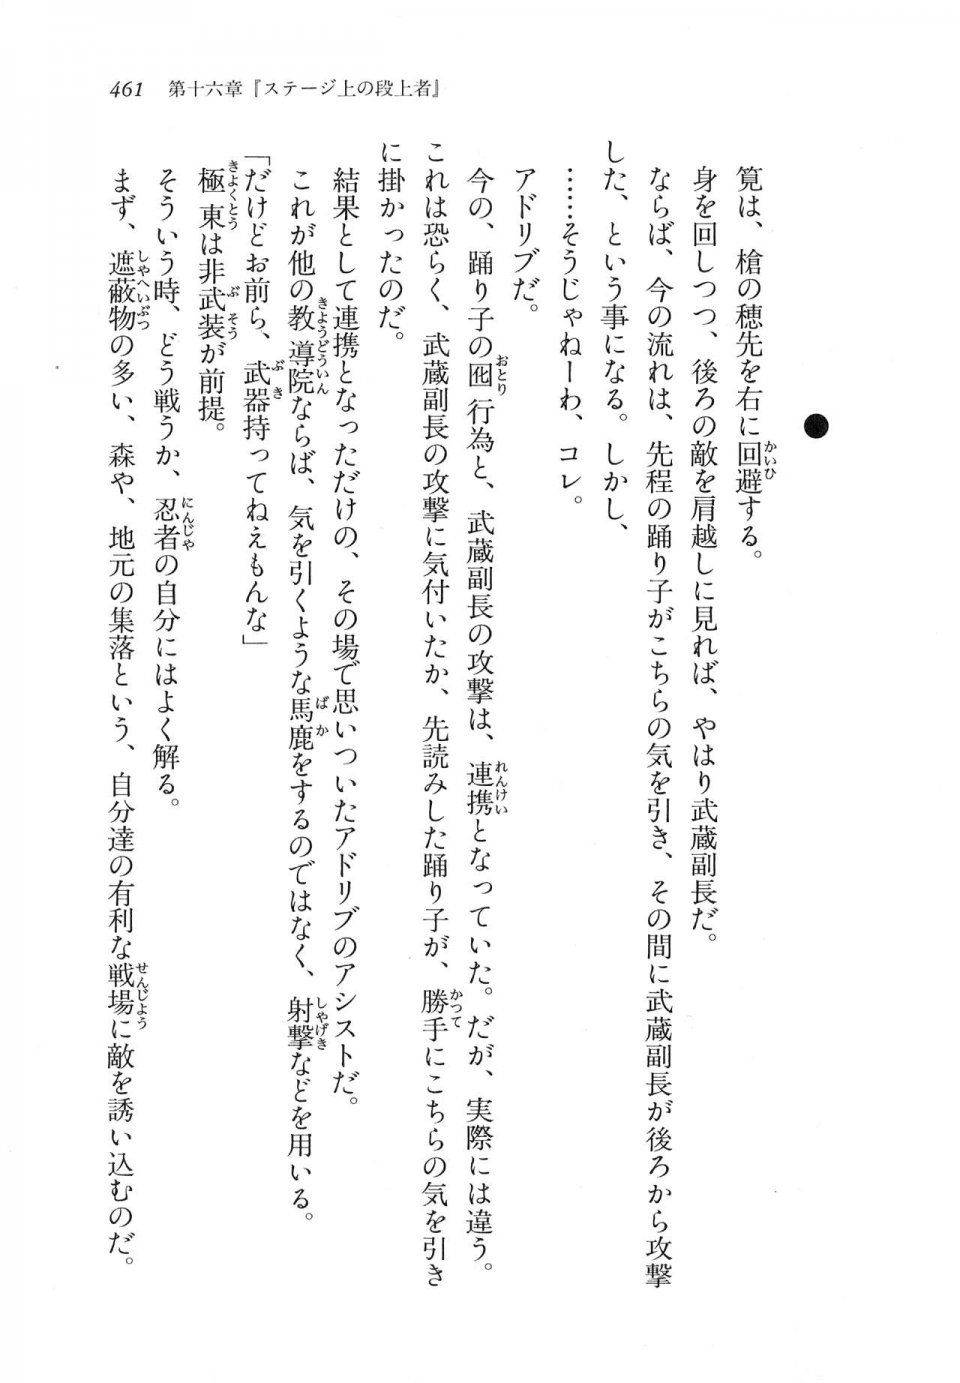 Kyoukai Senjou no Horizon LN Vol 11(5A) - Photo #461